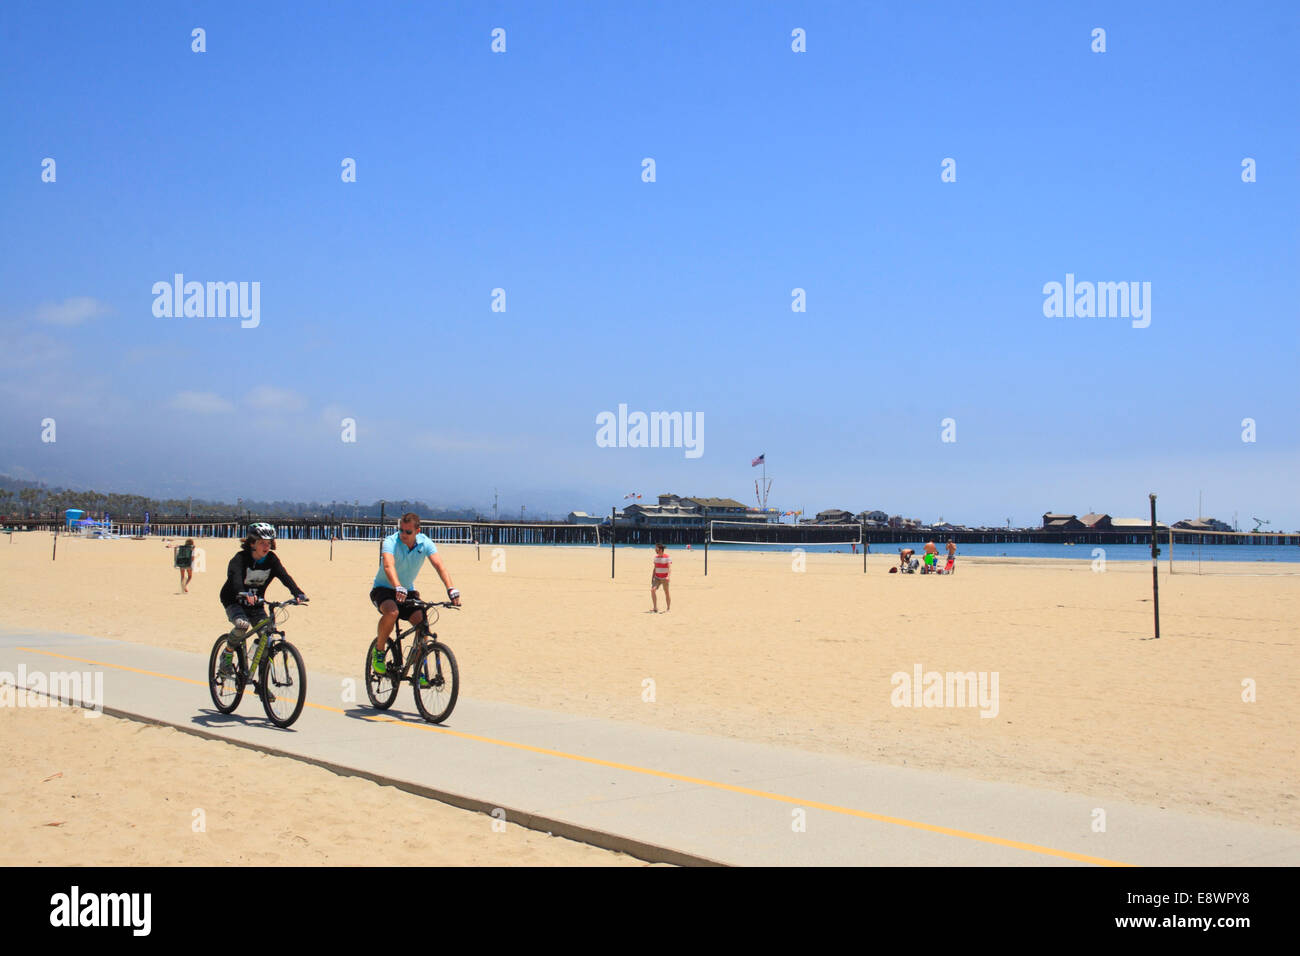 Cyclists at beach, Santa Barbara, California, USA Stock Photo